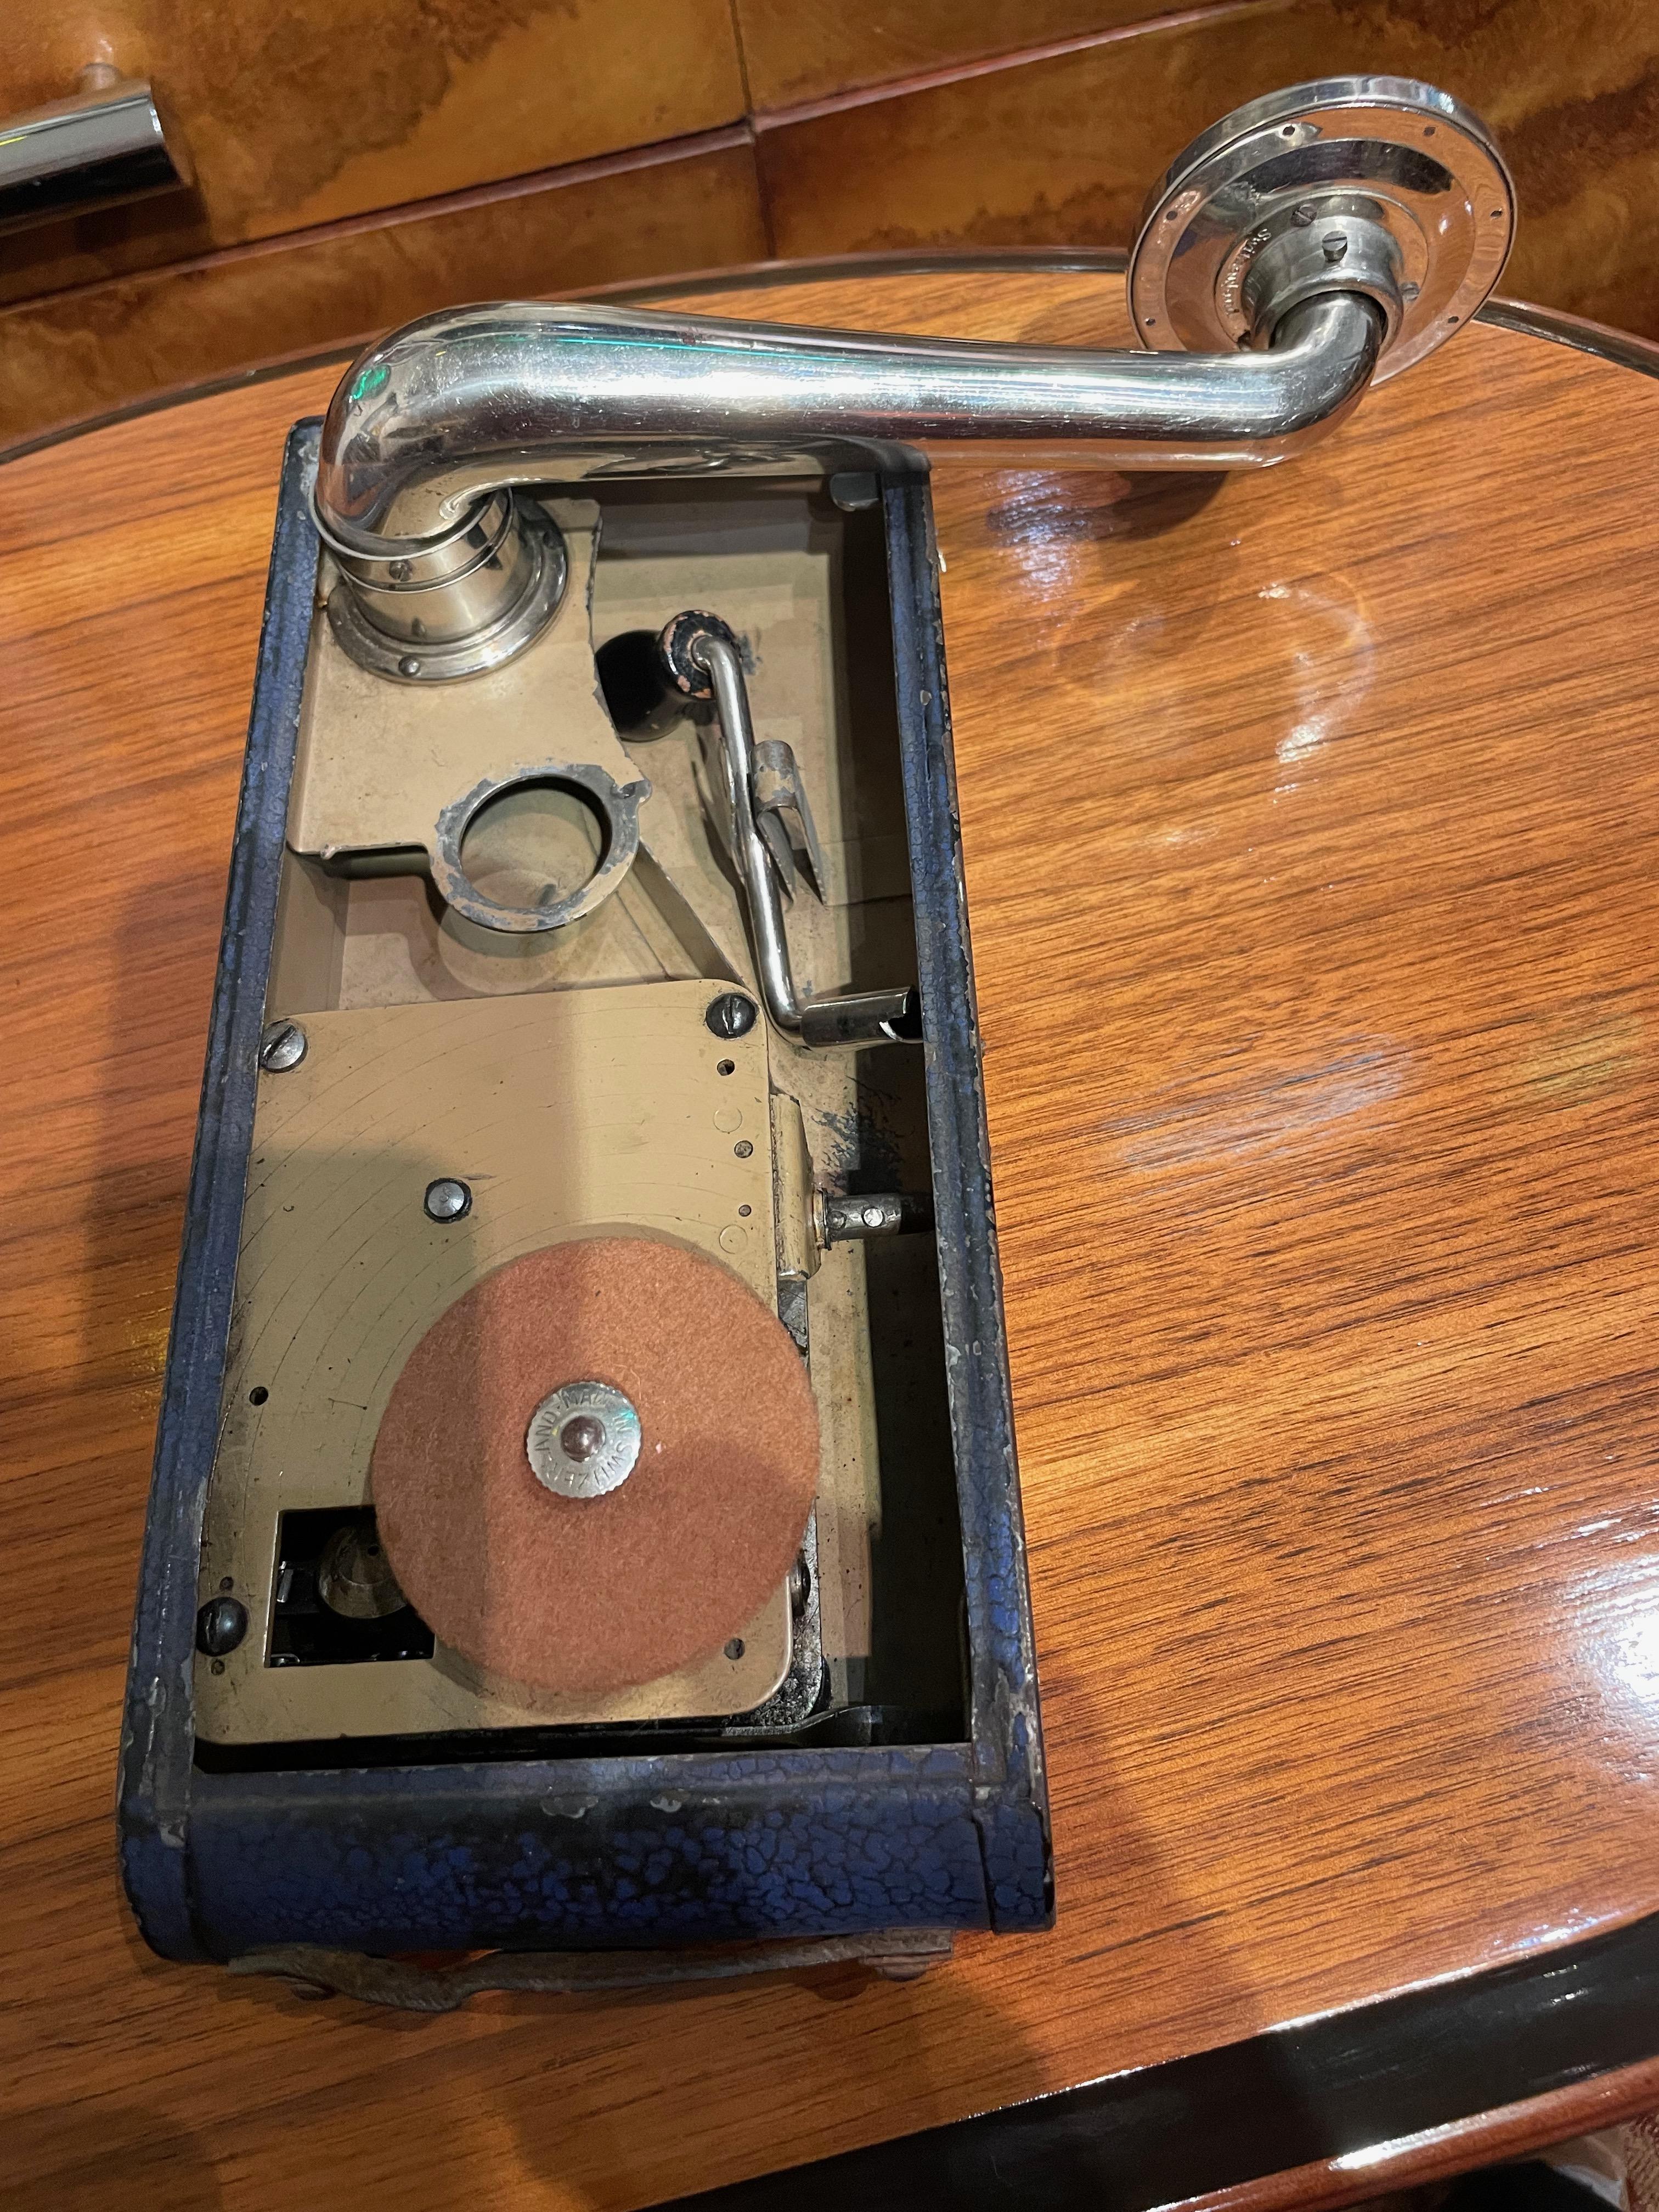 Dies ist ein authentisches tragbares Excelda Grammophon, der tragbare Phonograph der 1930er Jahre, der den damaligen Taschenkameras ähnelte (gewöhnlich als 